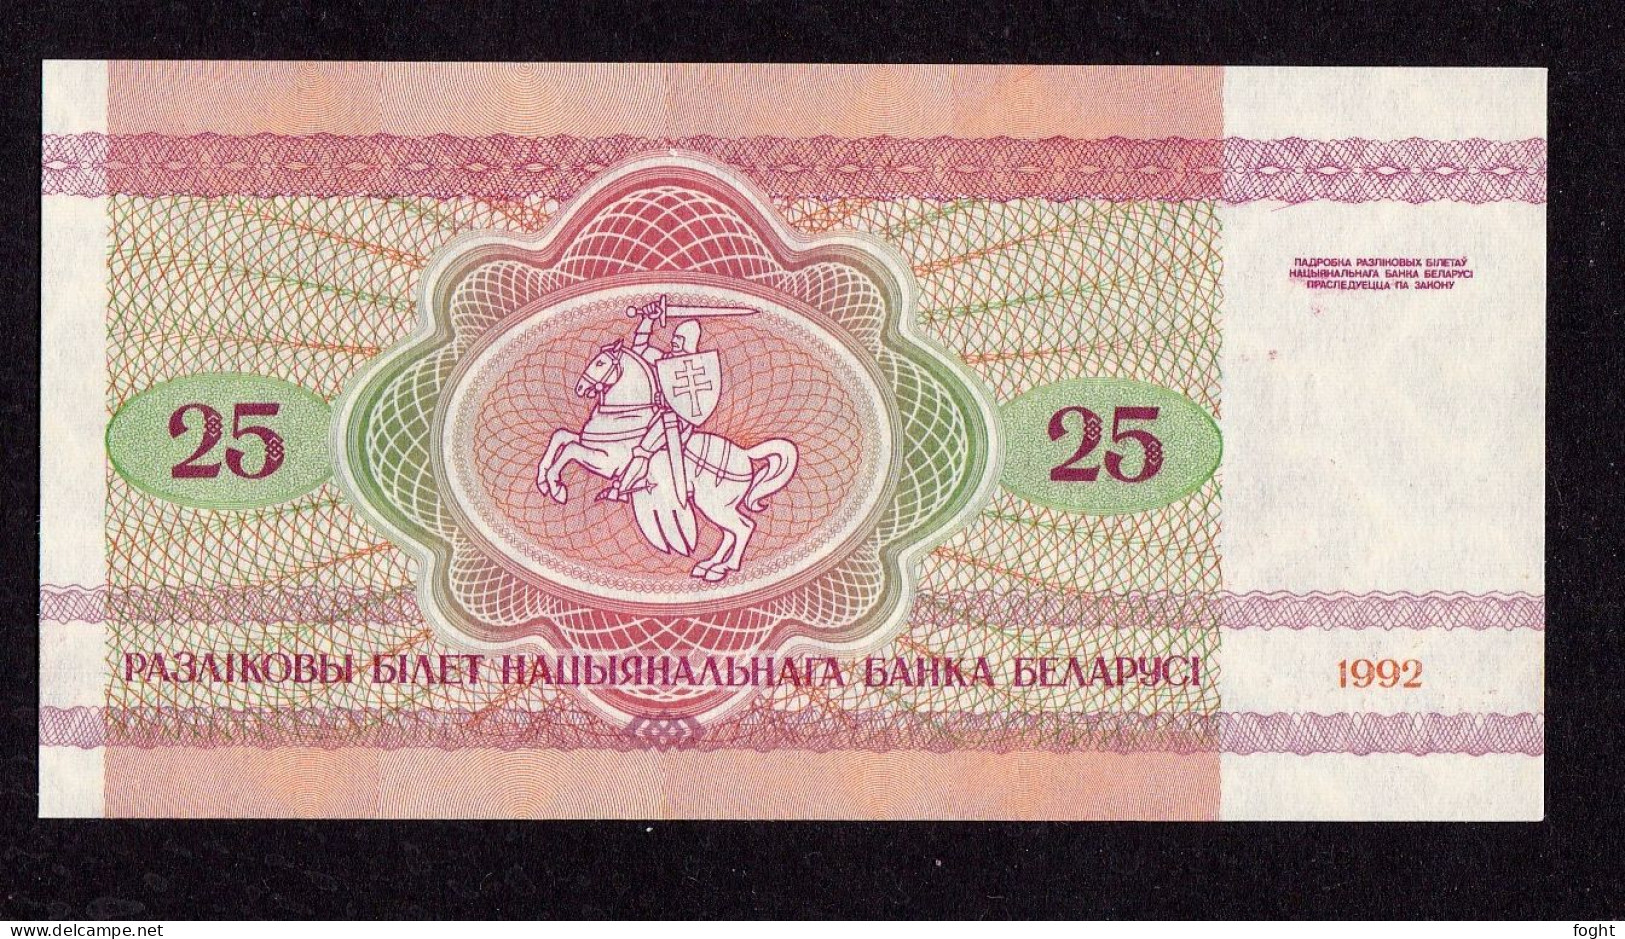 1992 АO Belarus Belarus National Bank Banknote 25 Rublei,P#6 - Belarus